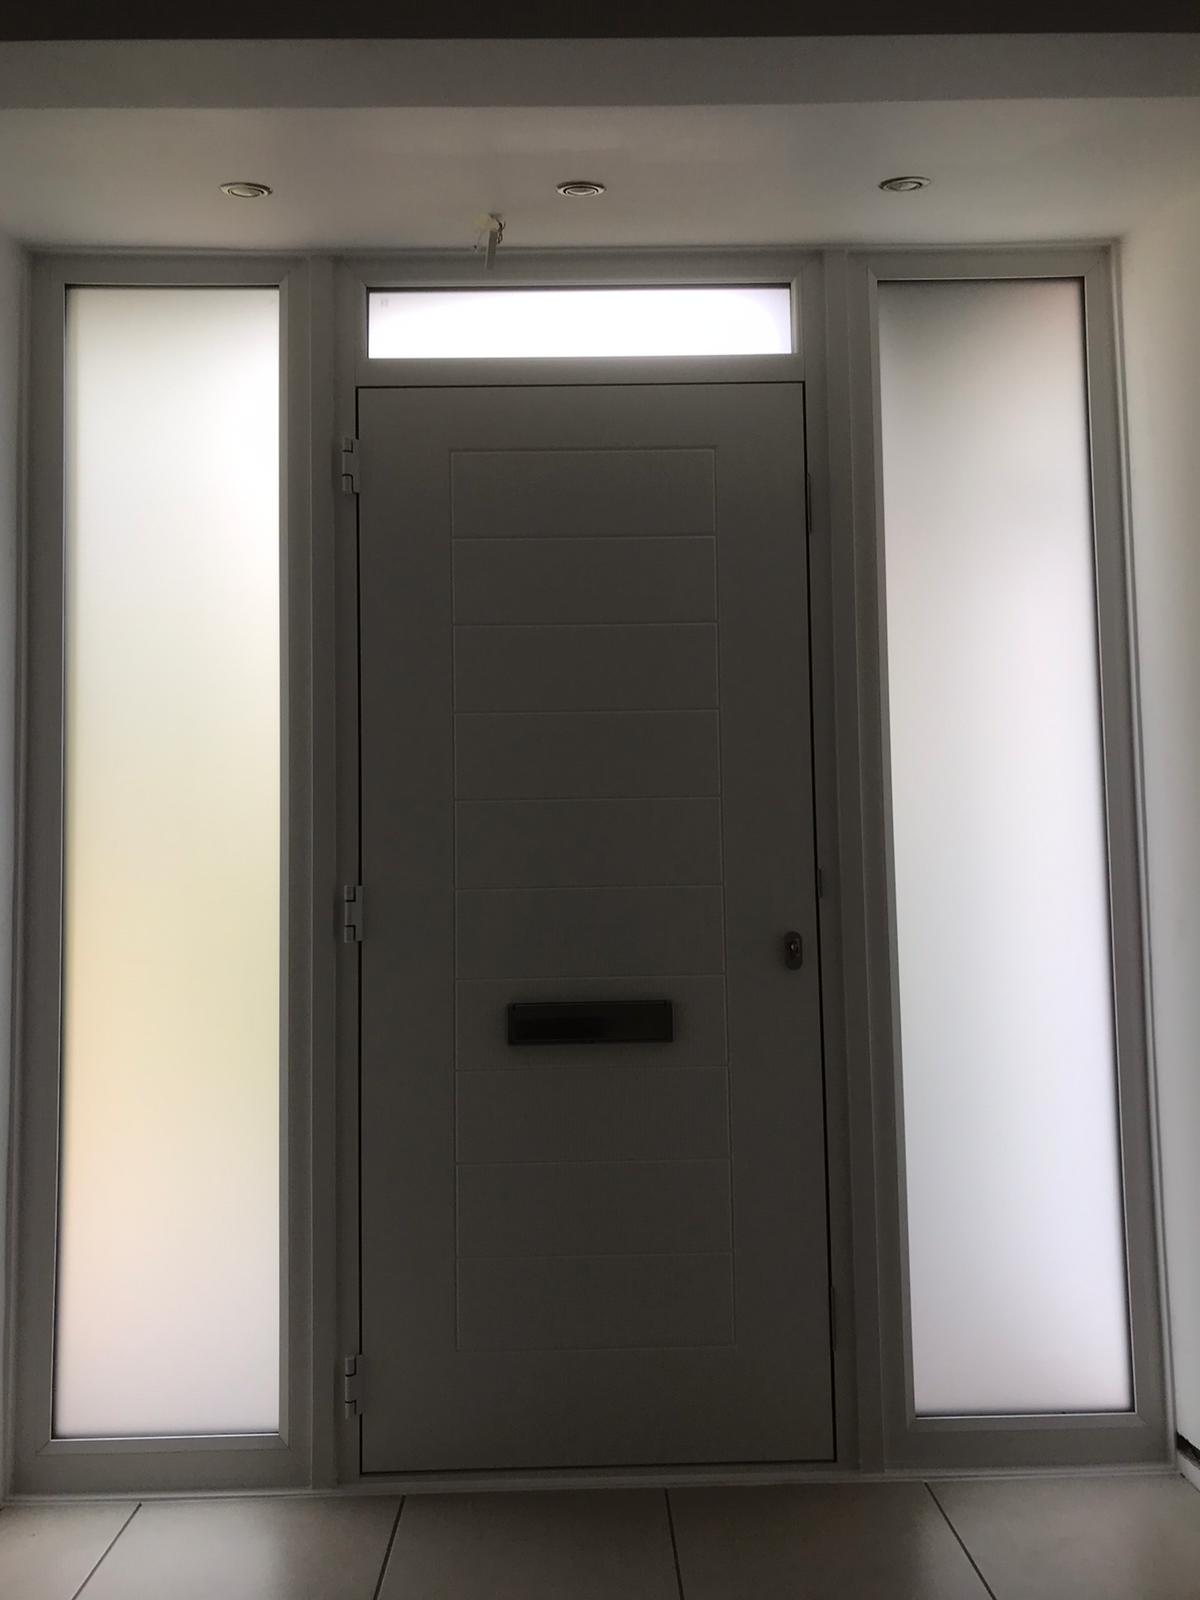 Composite Door With Sidelights